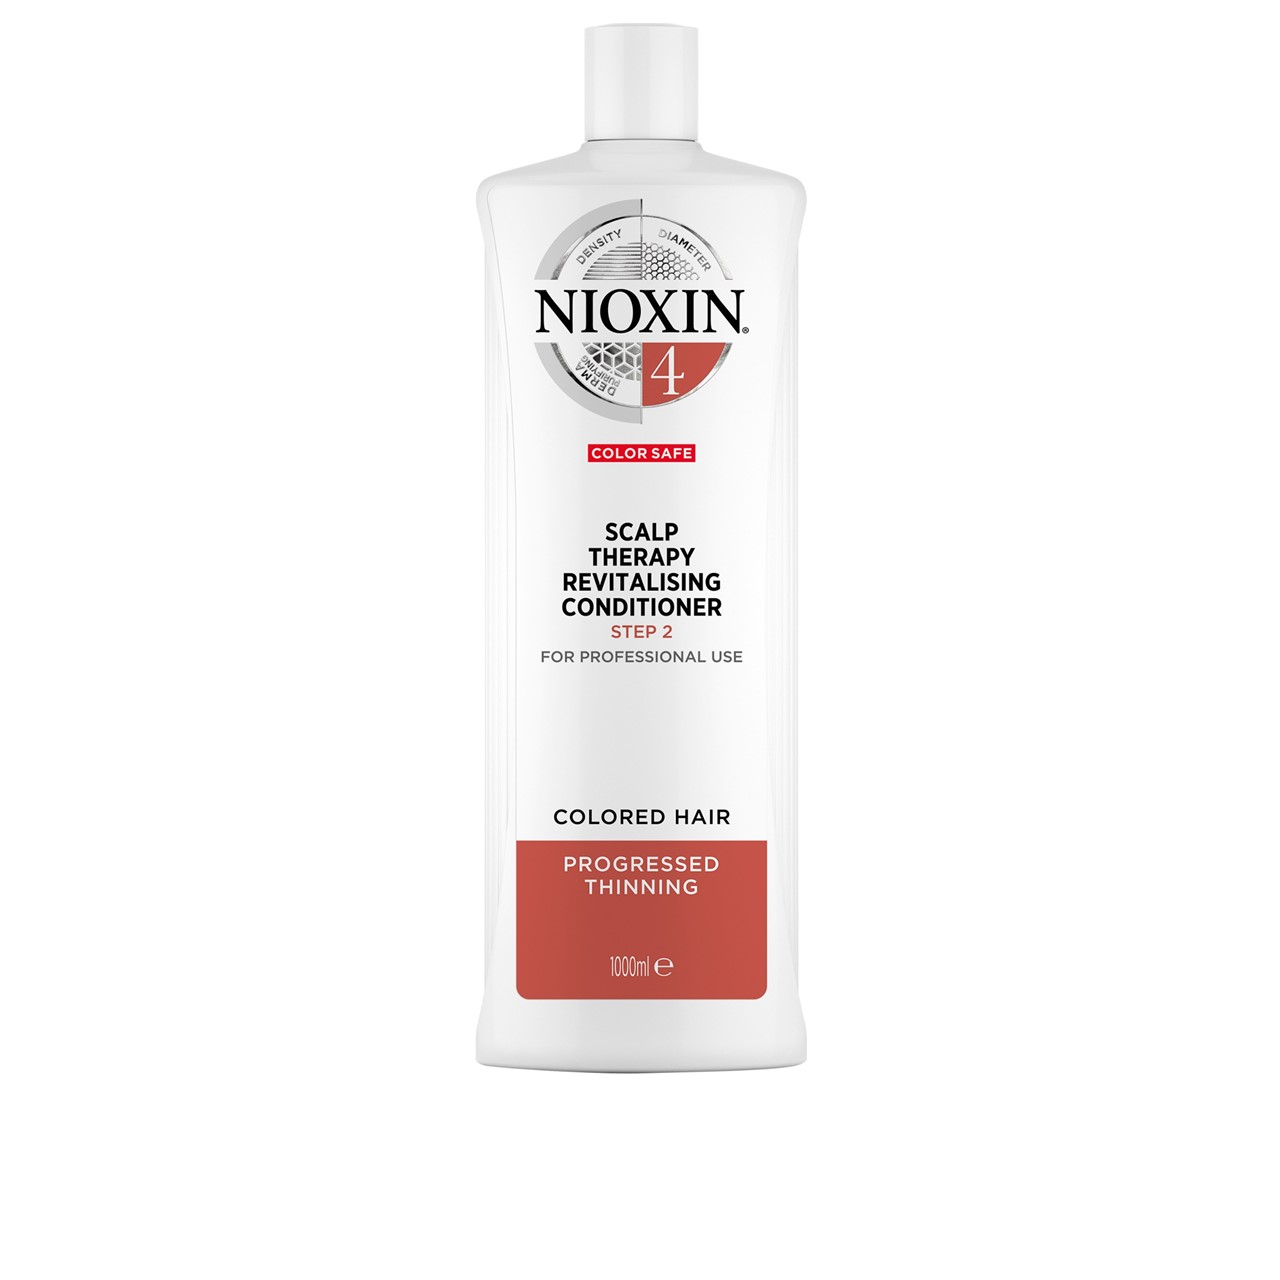 Nioxin System 4 Scalp Therapy Conditioner 1L (33.81fl oz)